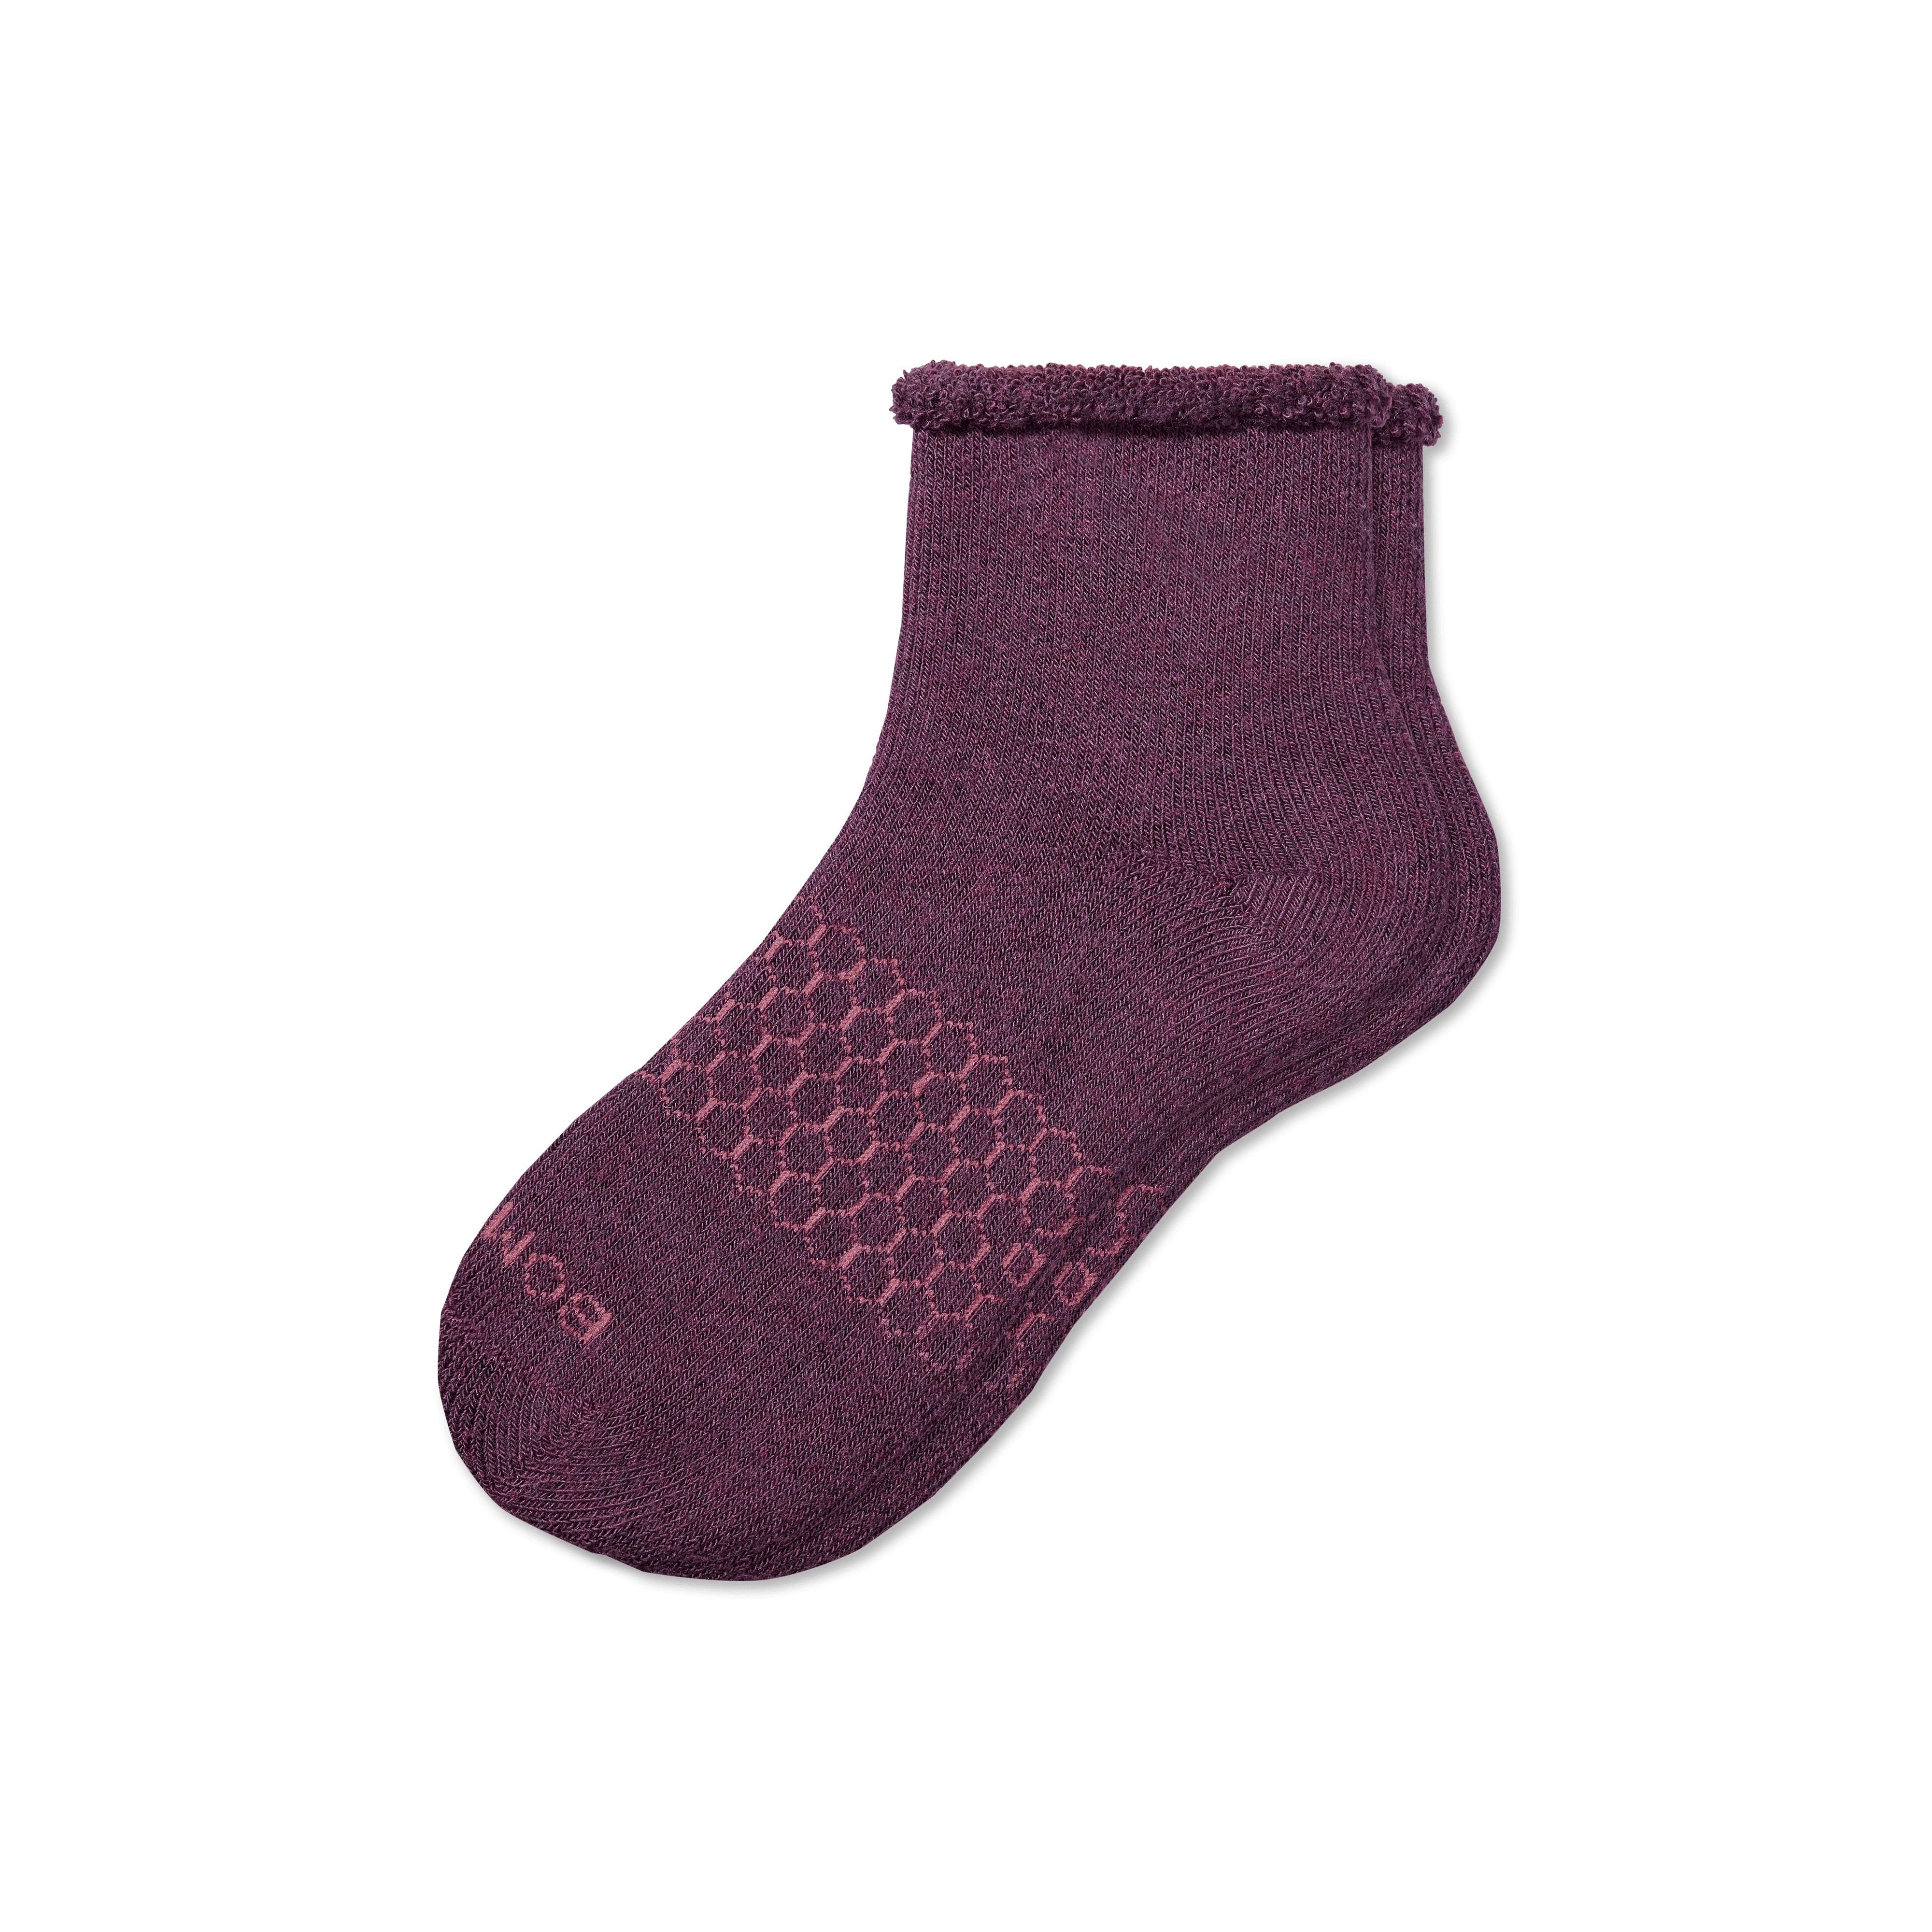 Bombas Merino Wool Blend Roll-top House Socks In Spiced Wine